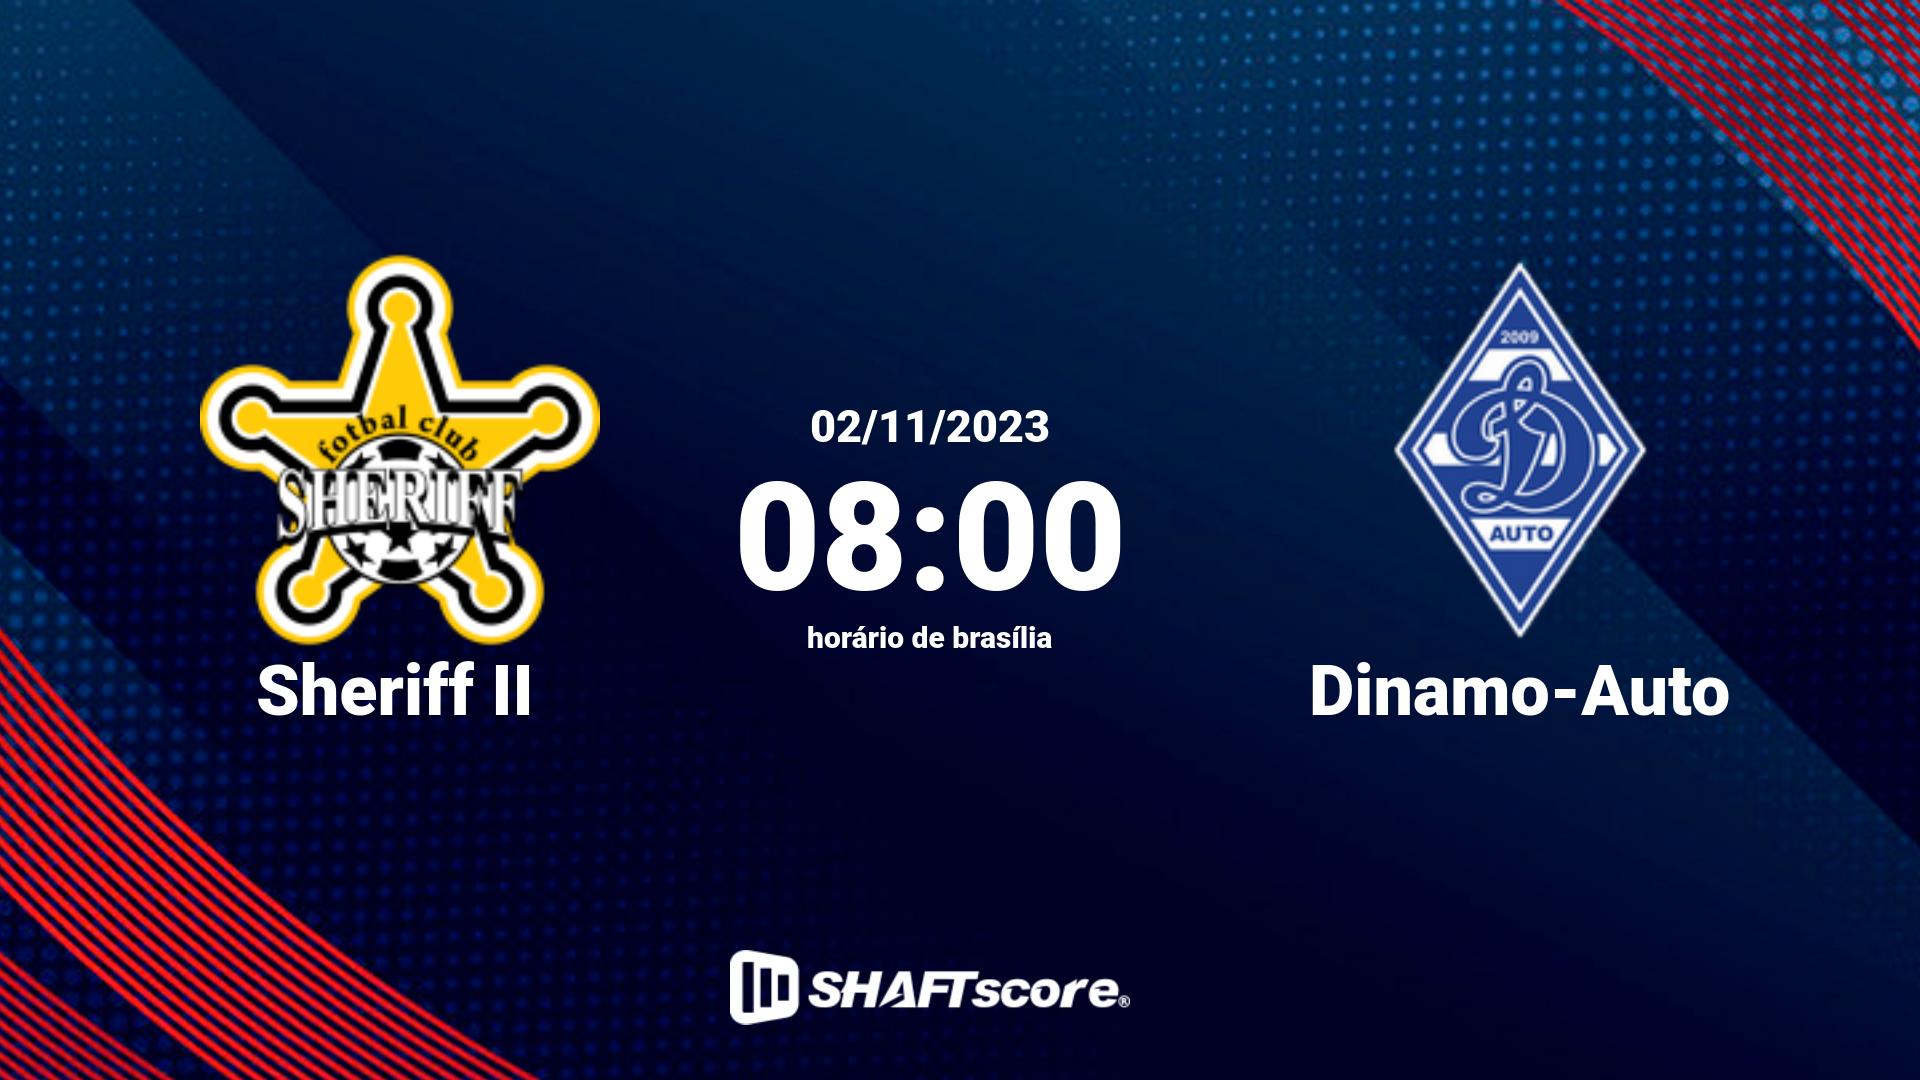 Estatísticas do jogo Sheriff II vs Dinamo-Auto 02.11 08:00